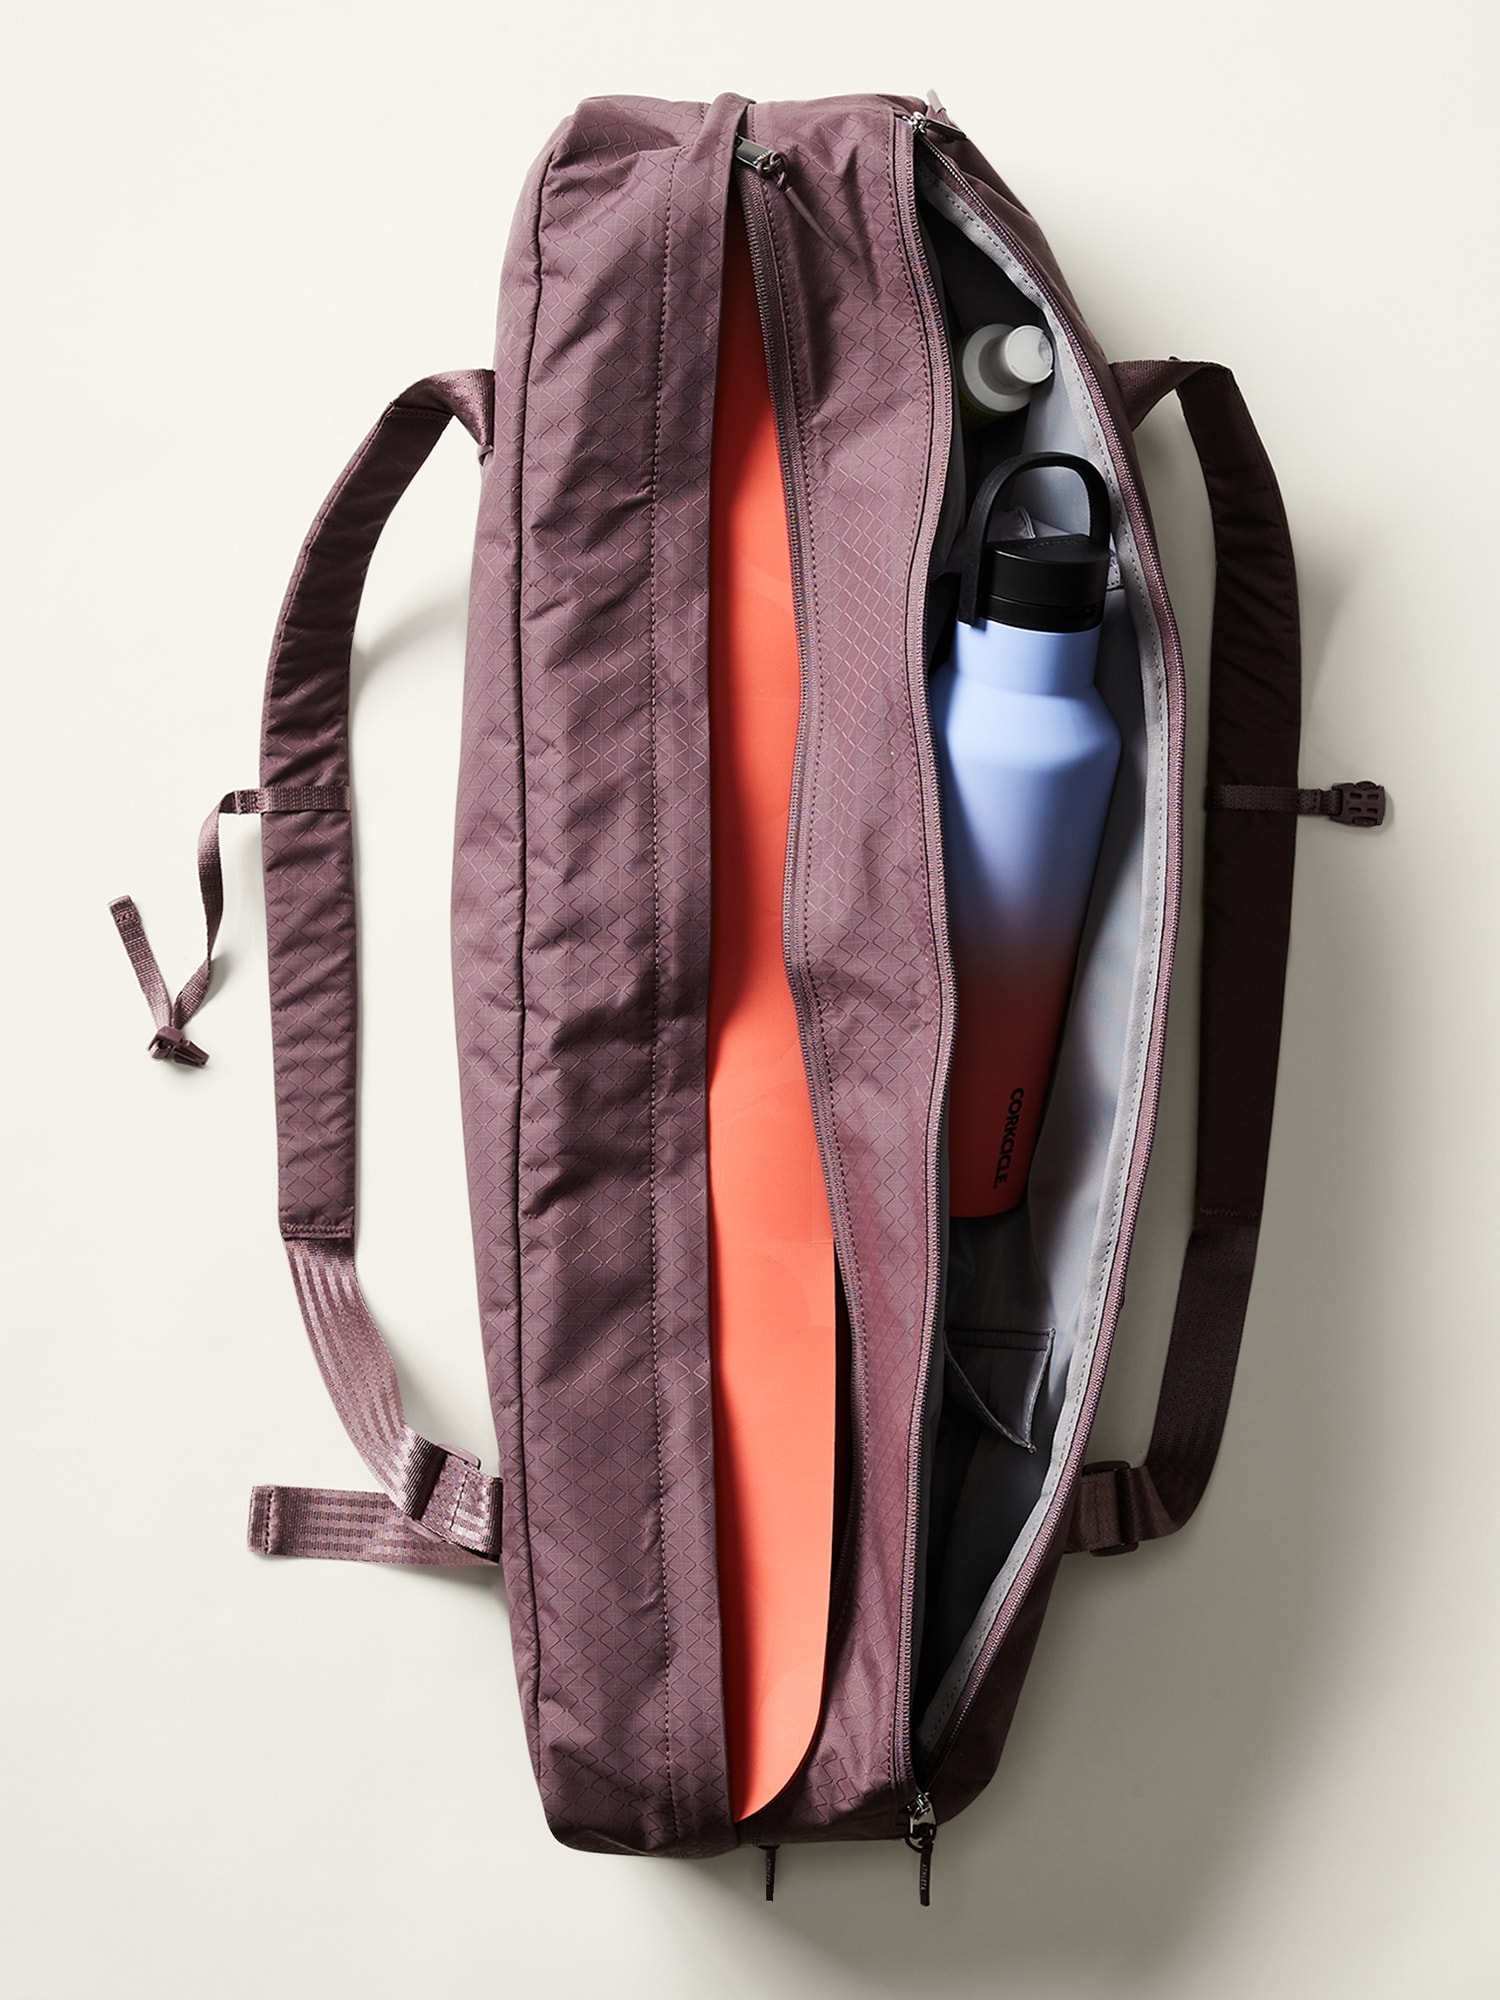 WRASCO Yoga Mat Bag for Women & Men, Light Green 2.0 | WRASCO